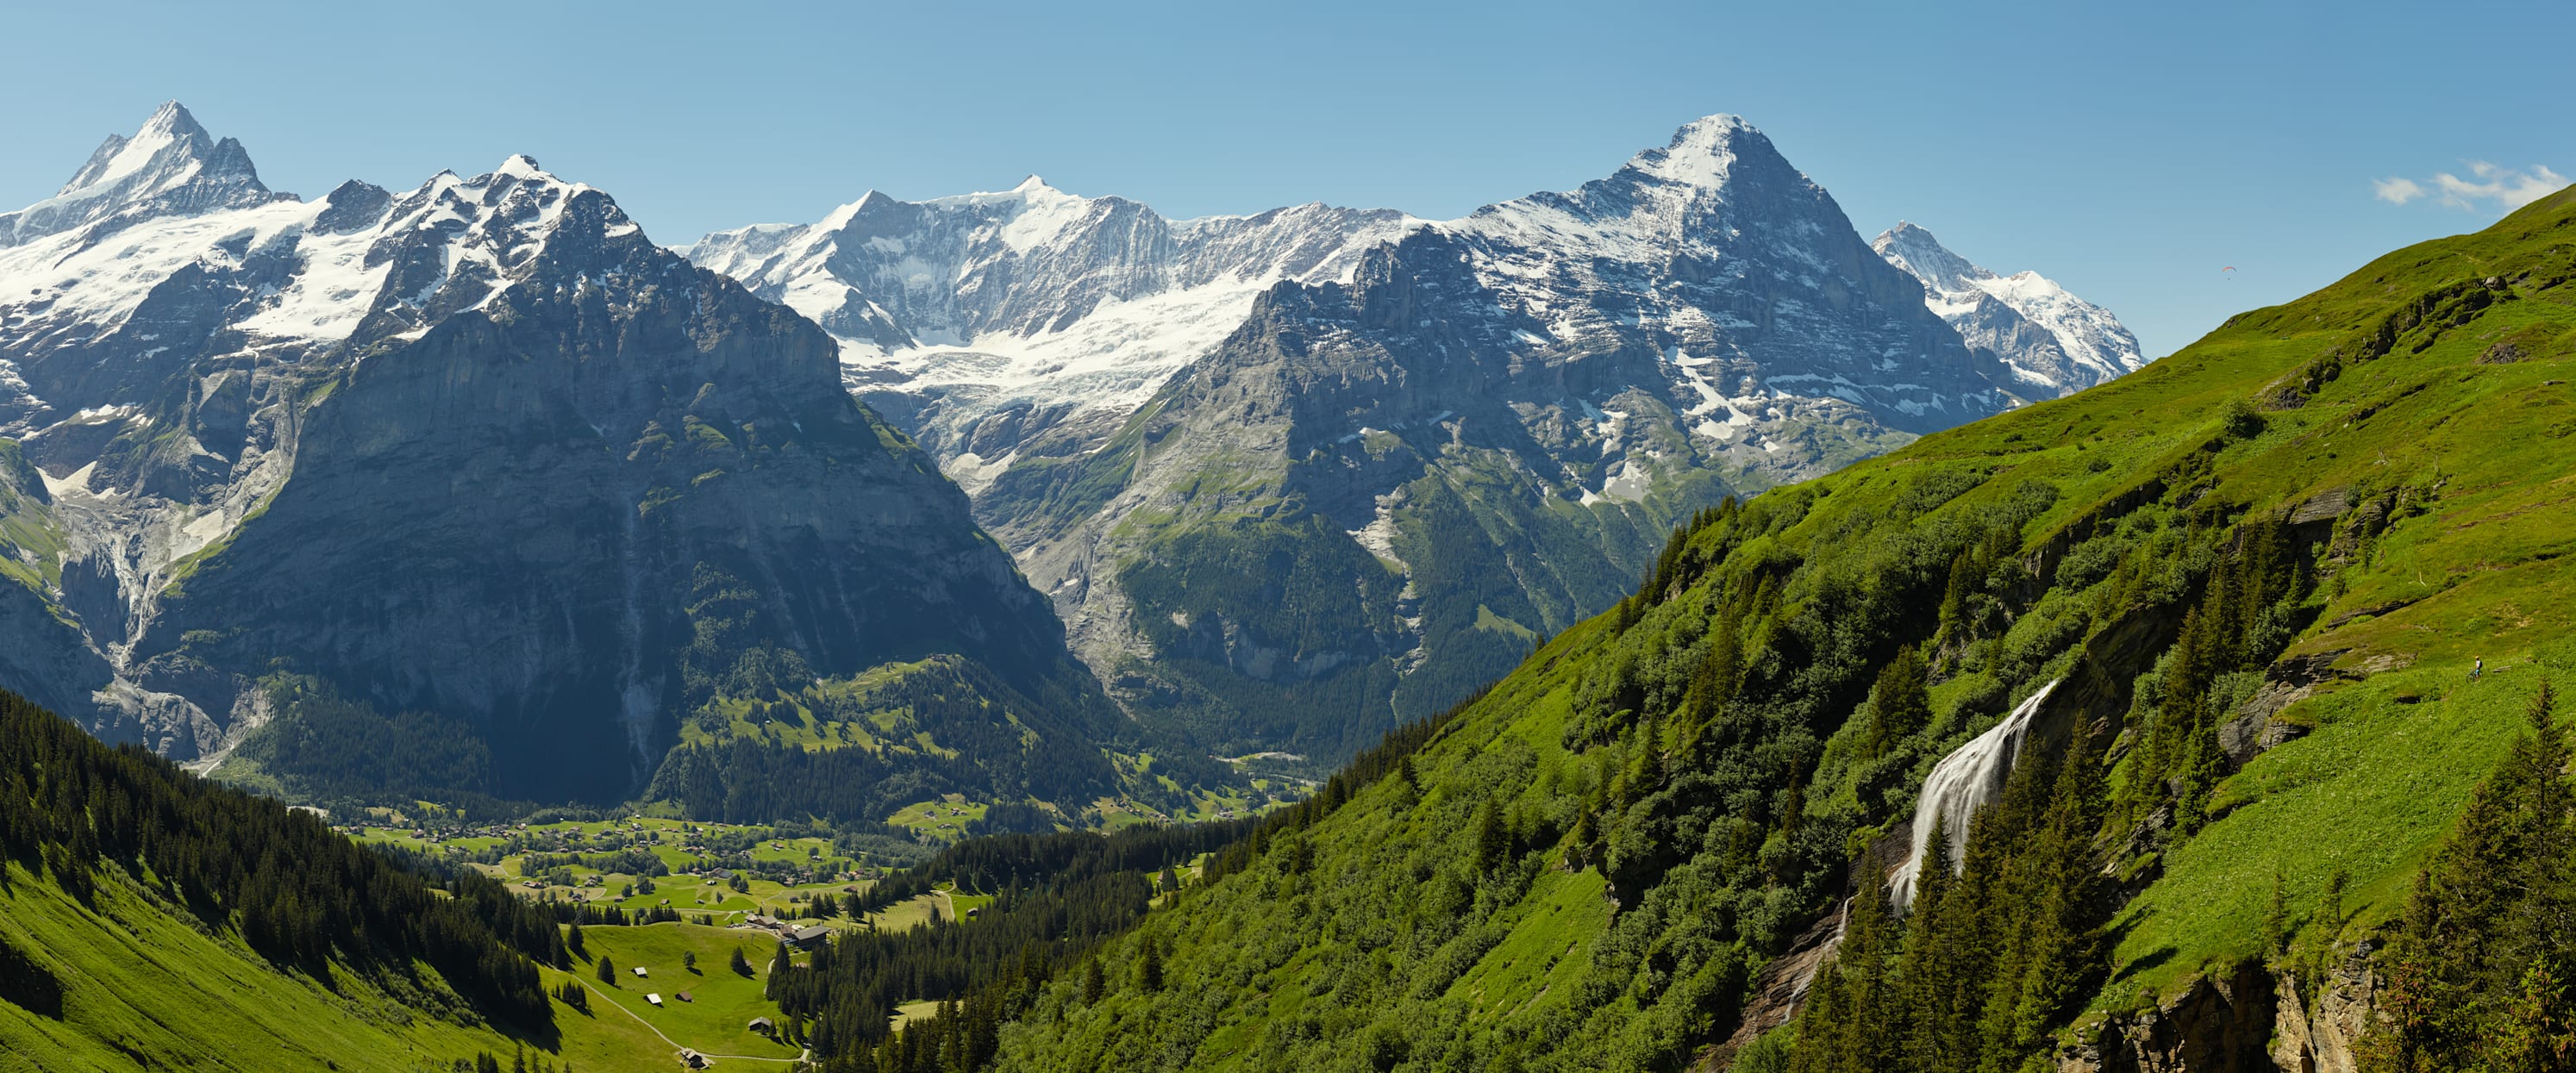 Biken Eiger Schreckhorn Panorama Grindelwald Wasserfall